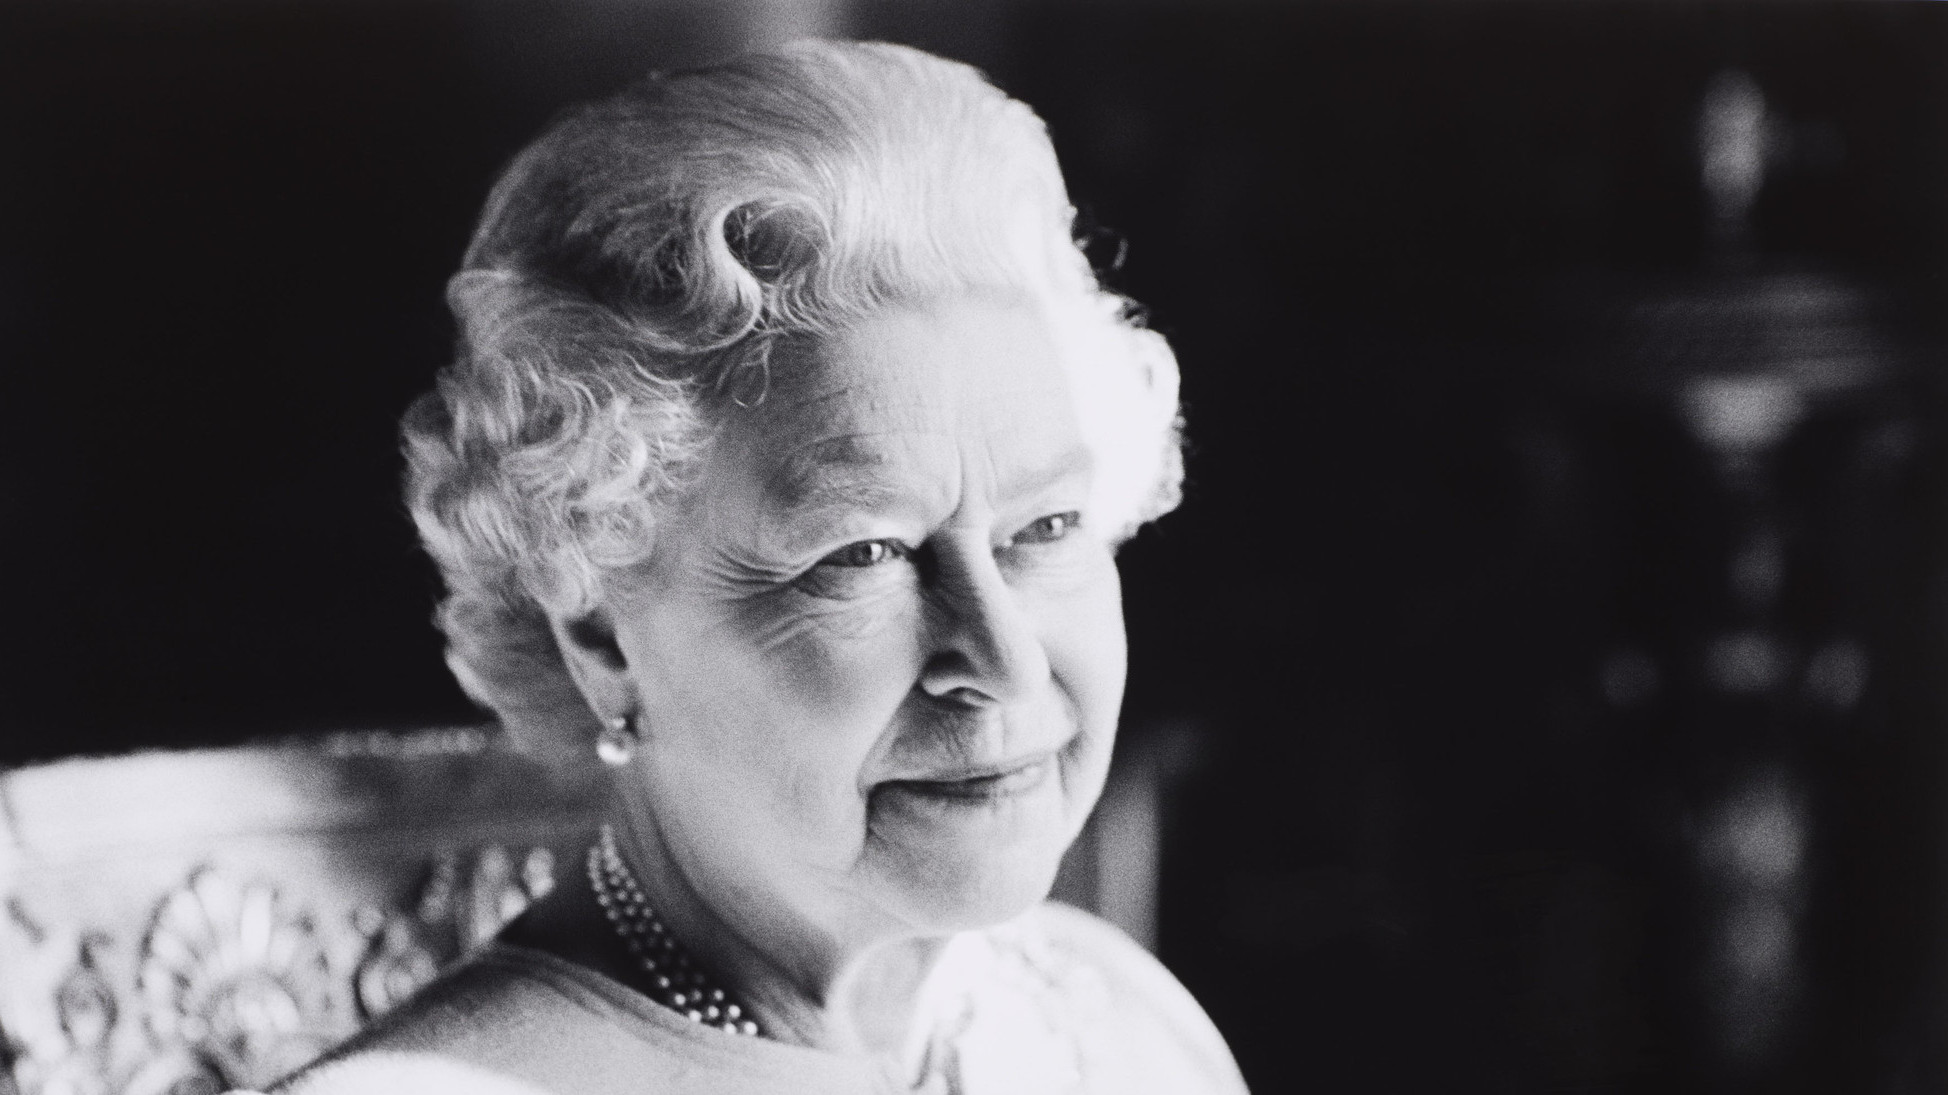 Îmormântarea Reginei va avea loc la Westminster, peste 10 zile